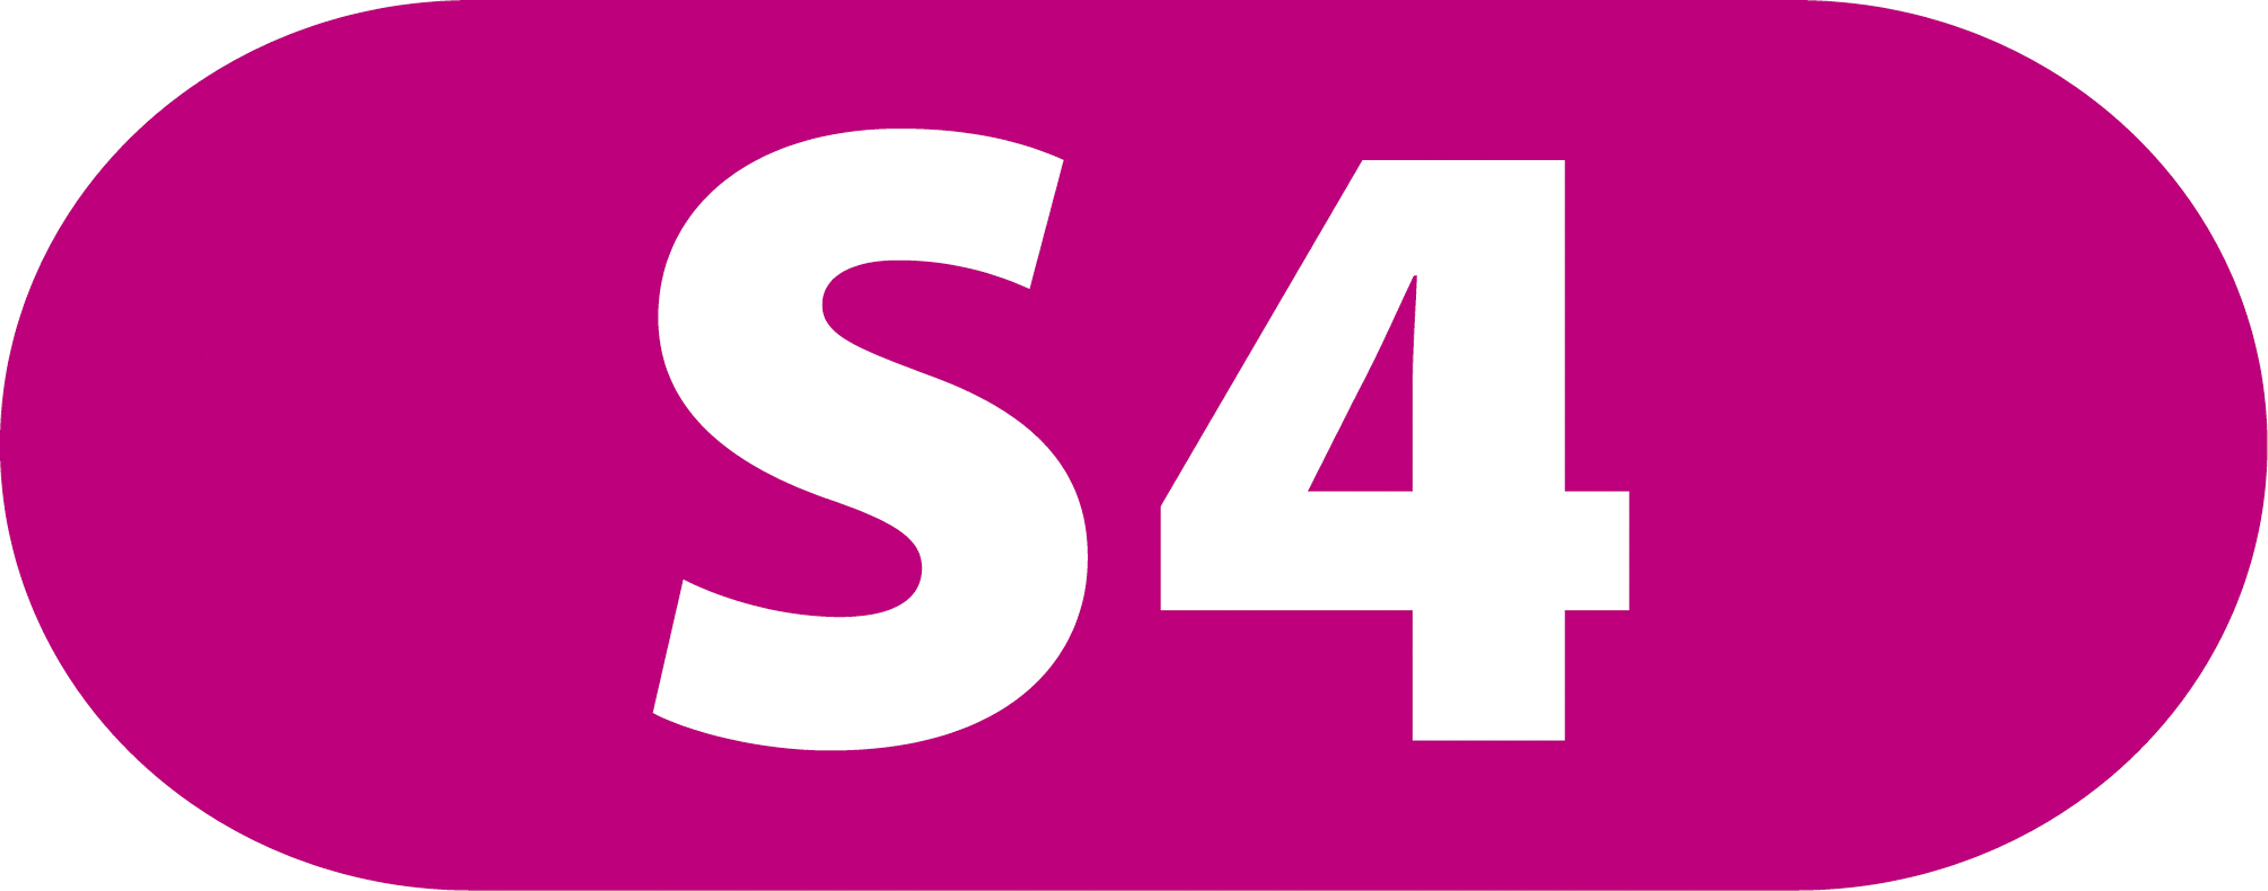 Bildergebnis für logo s-bahn s4